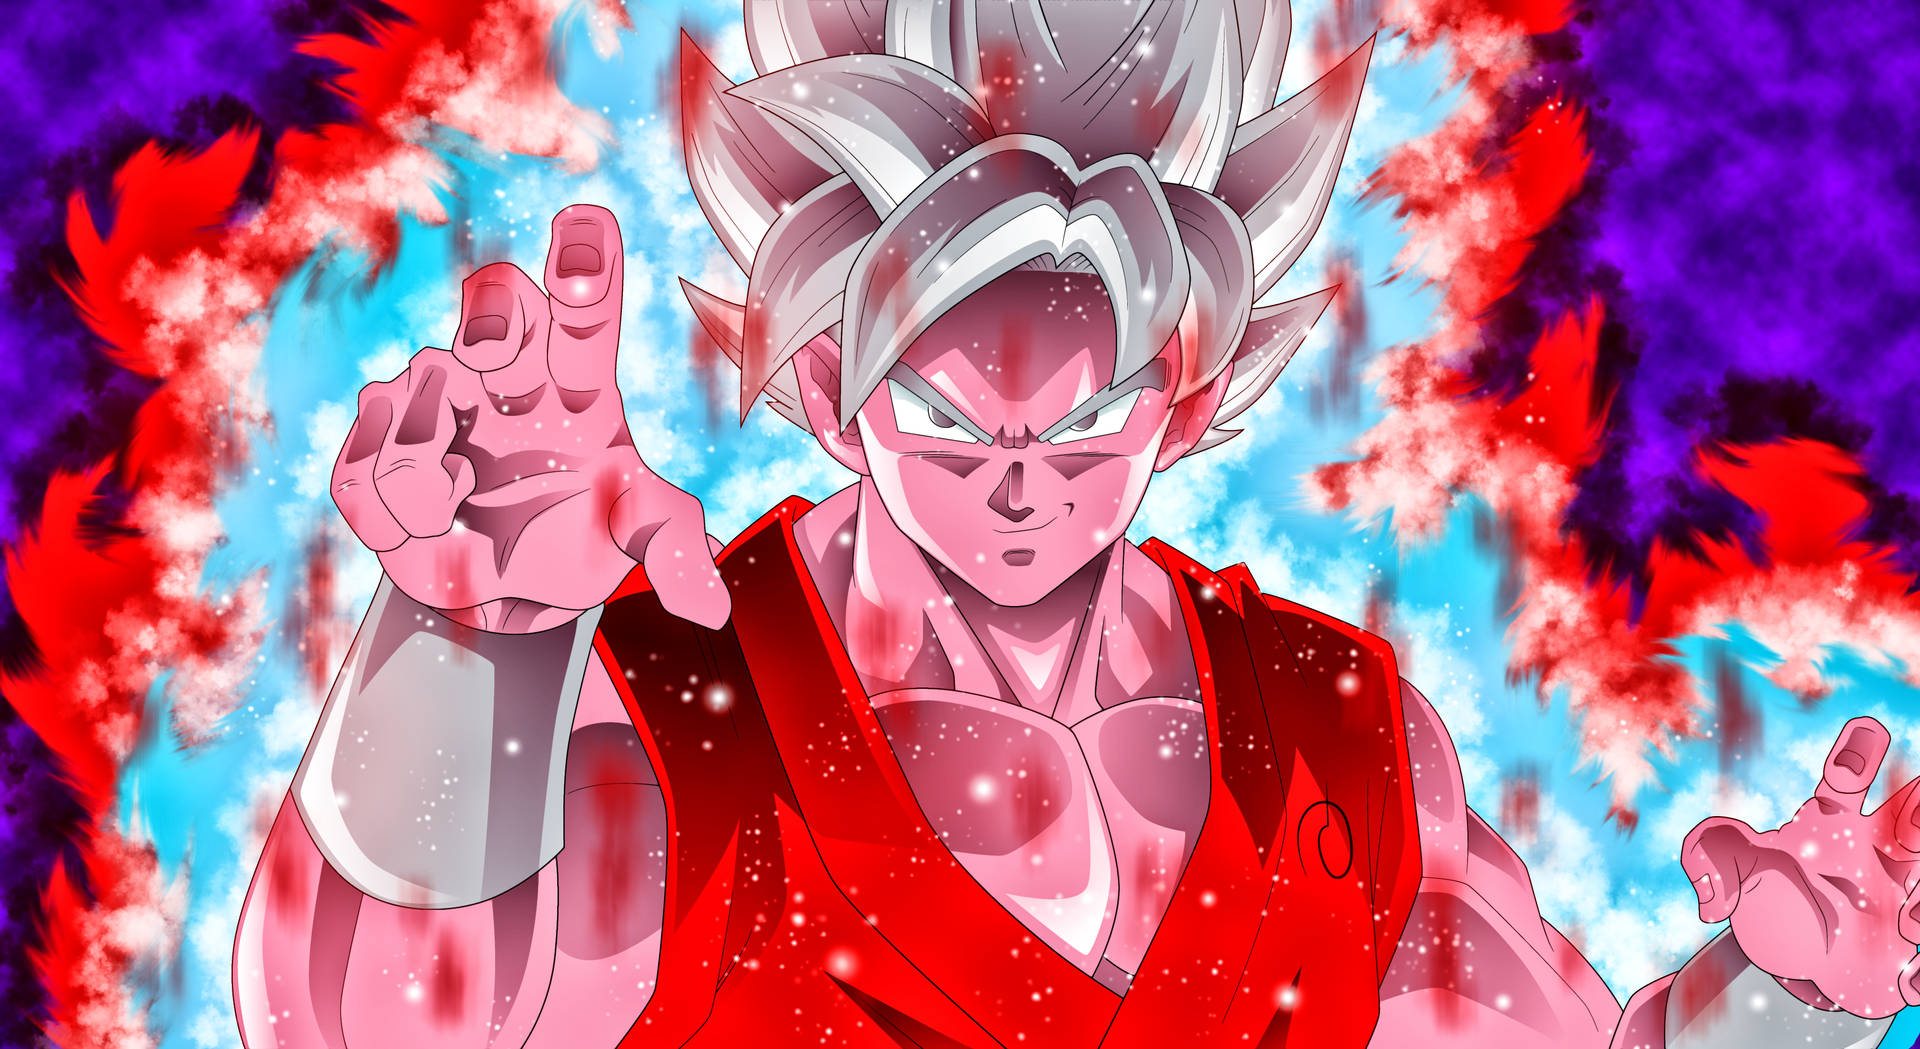 Goku 3967 X 2167 Background